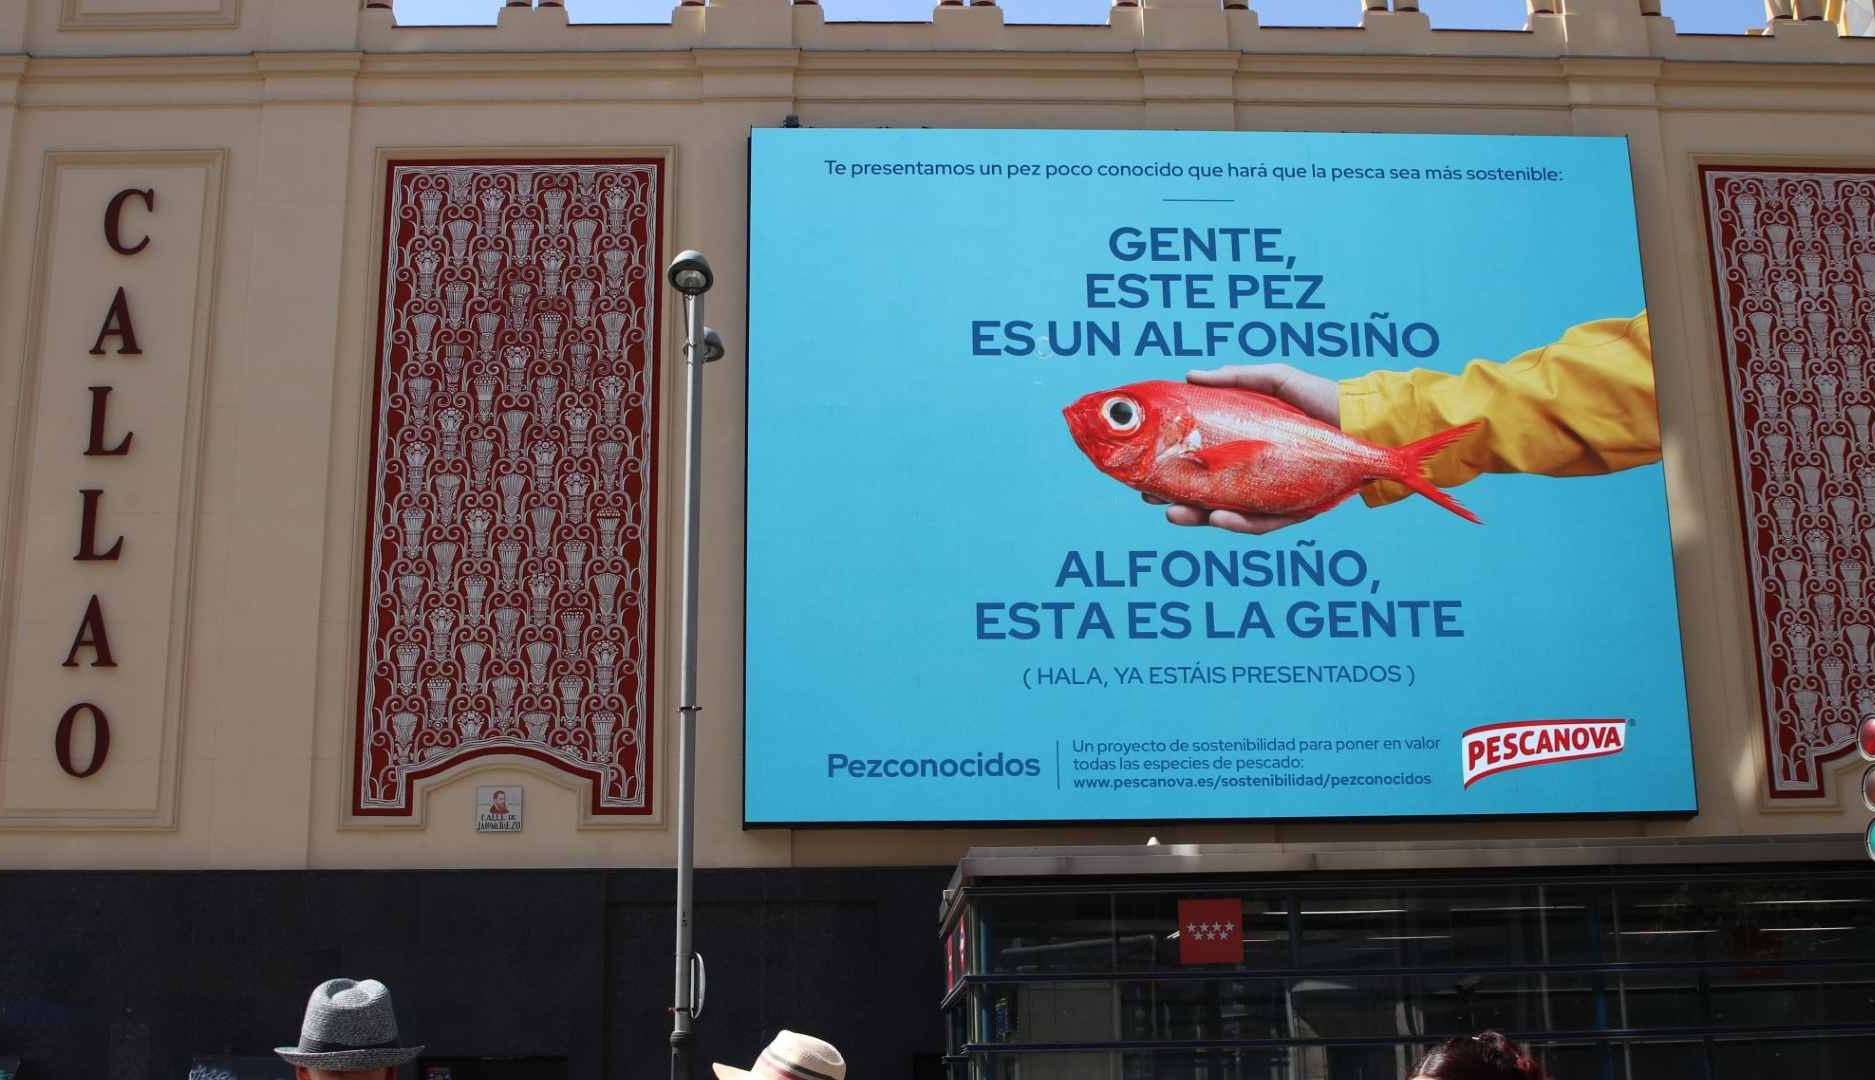 “Alfonsiño, esta es la gente": Pescanova divulga las virtudes de peces poco habituales en la dieta con la iniciativa “Pezconocidos”